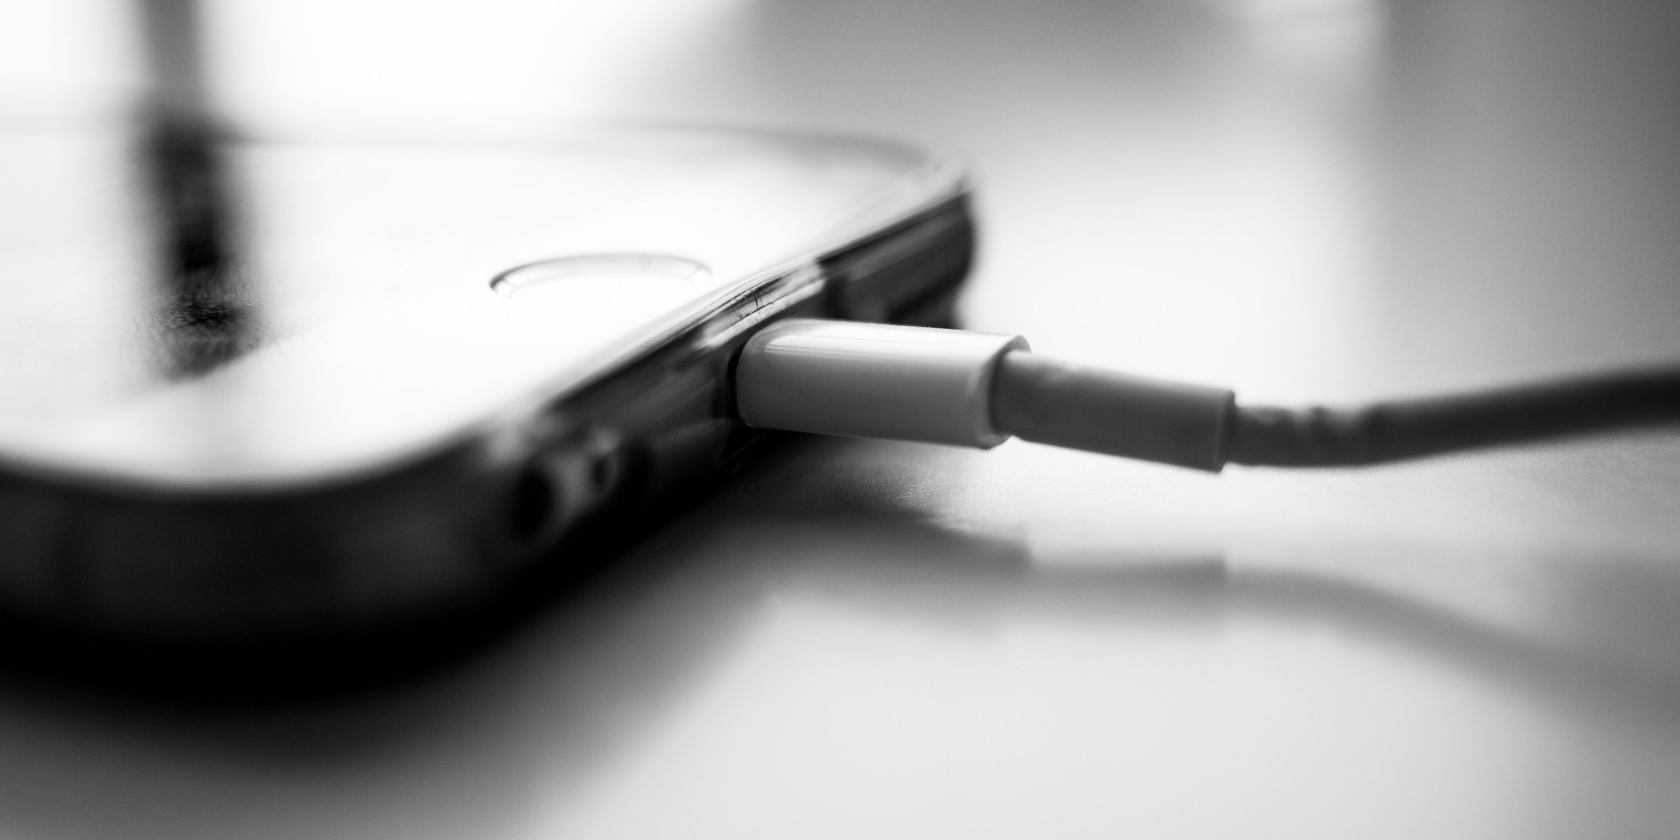 iphone charging batterygate - 6 modi per riparare un iPhone bloccato sul logo Apple